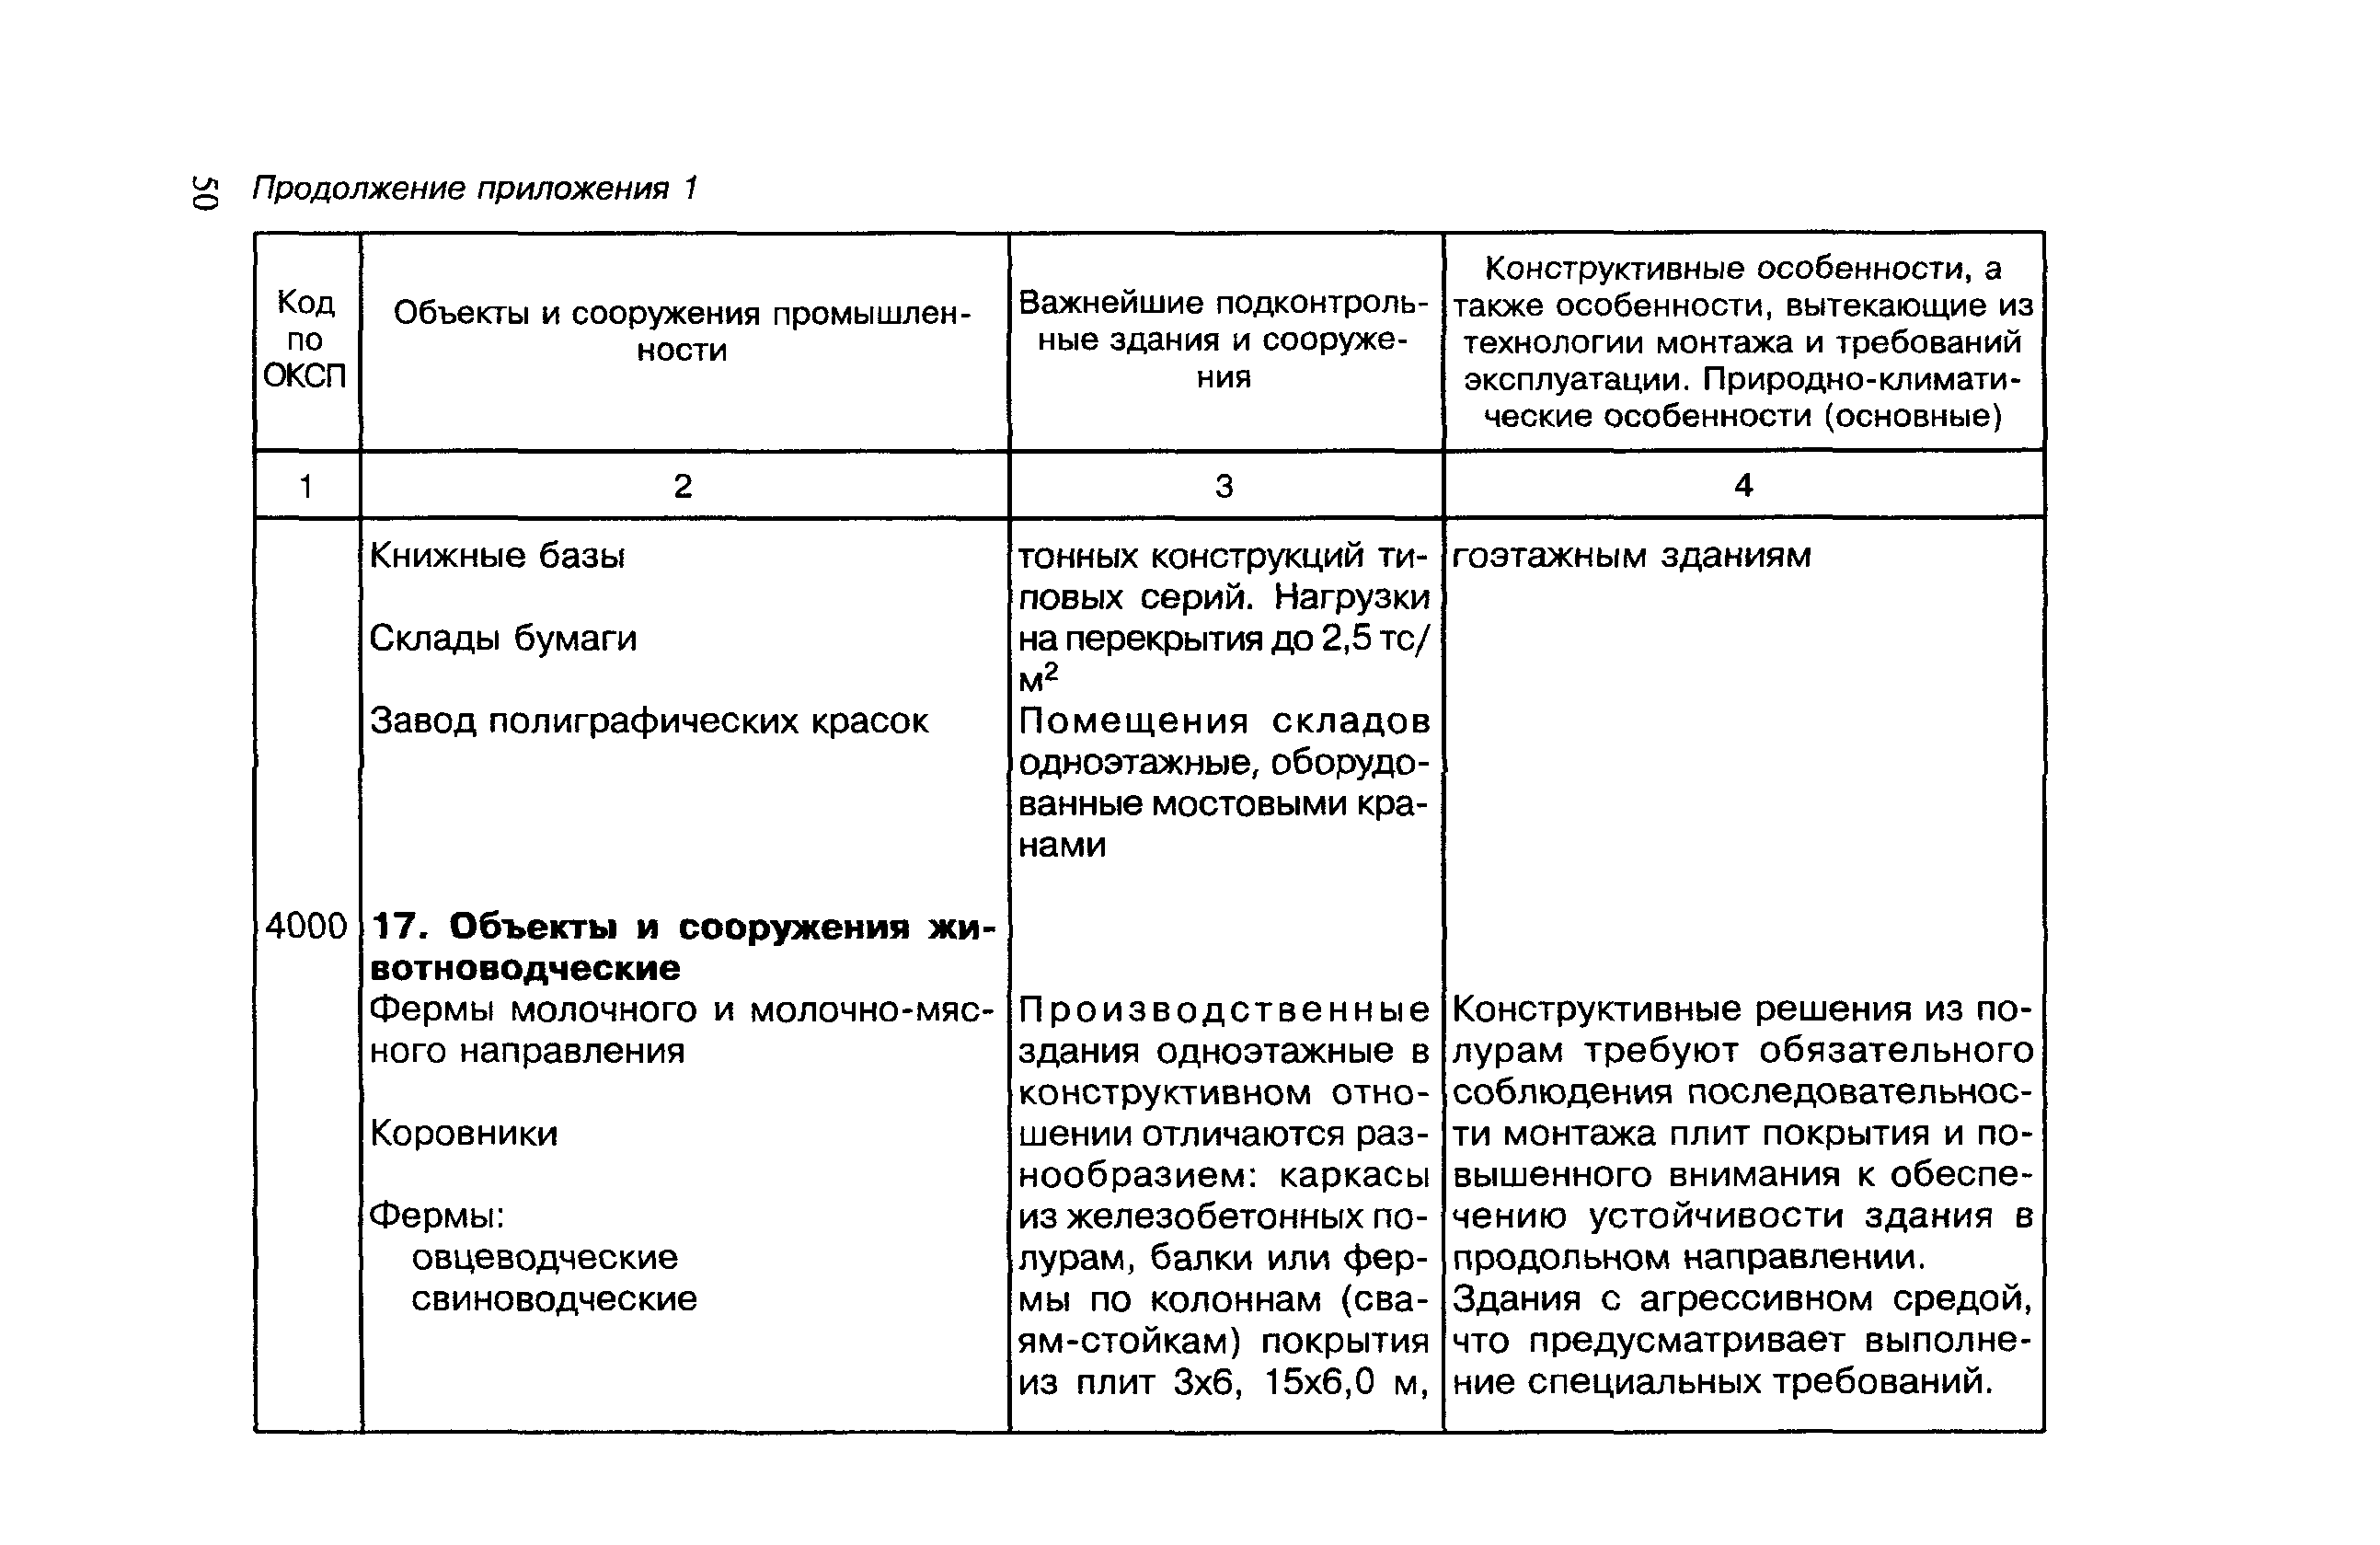 МДС 12-7.2000